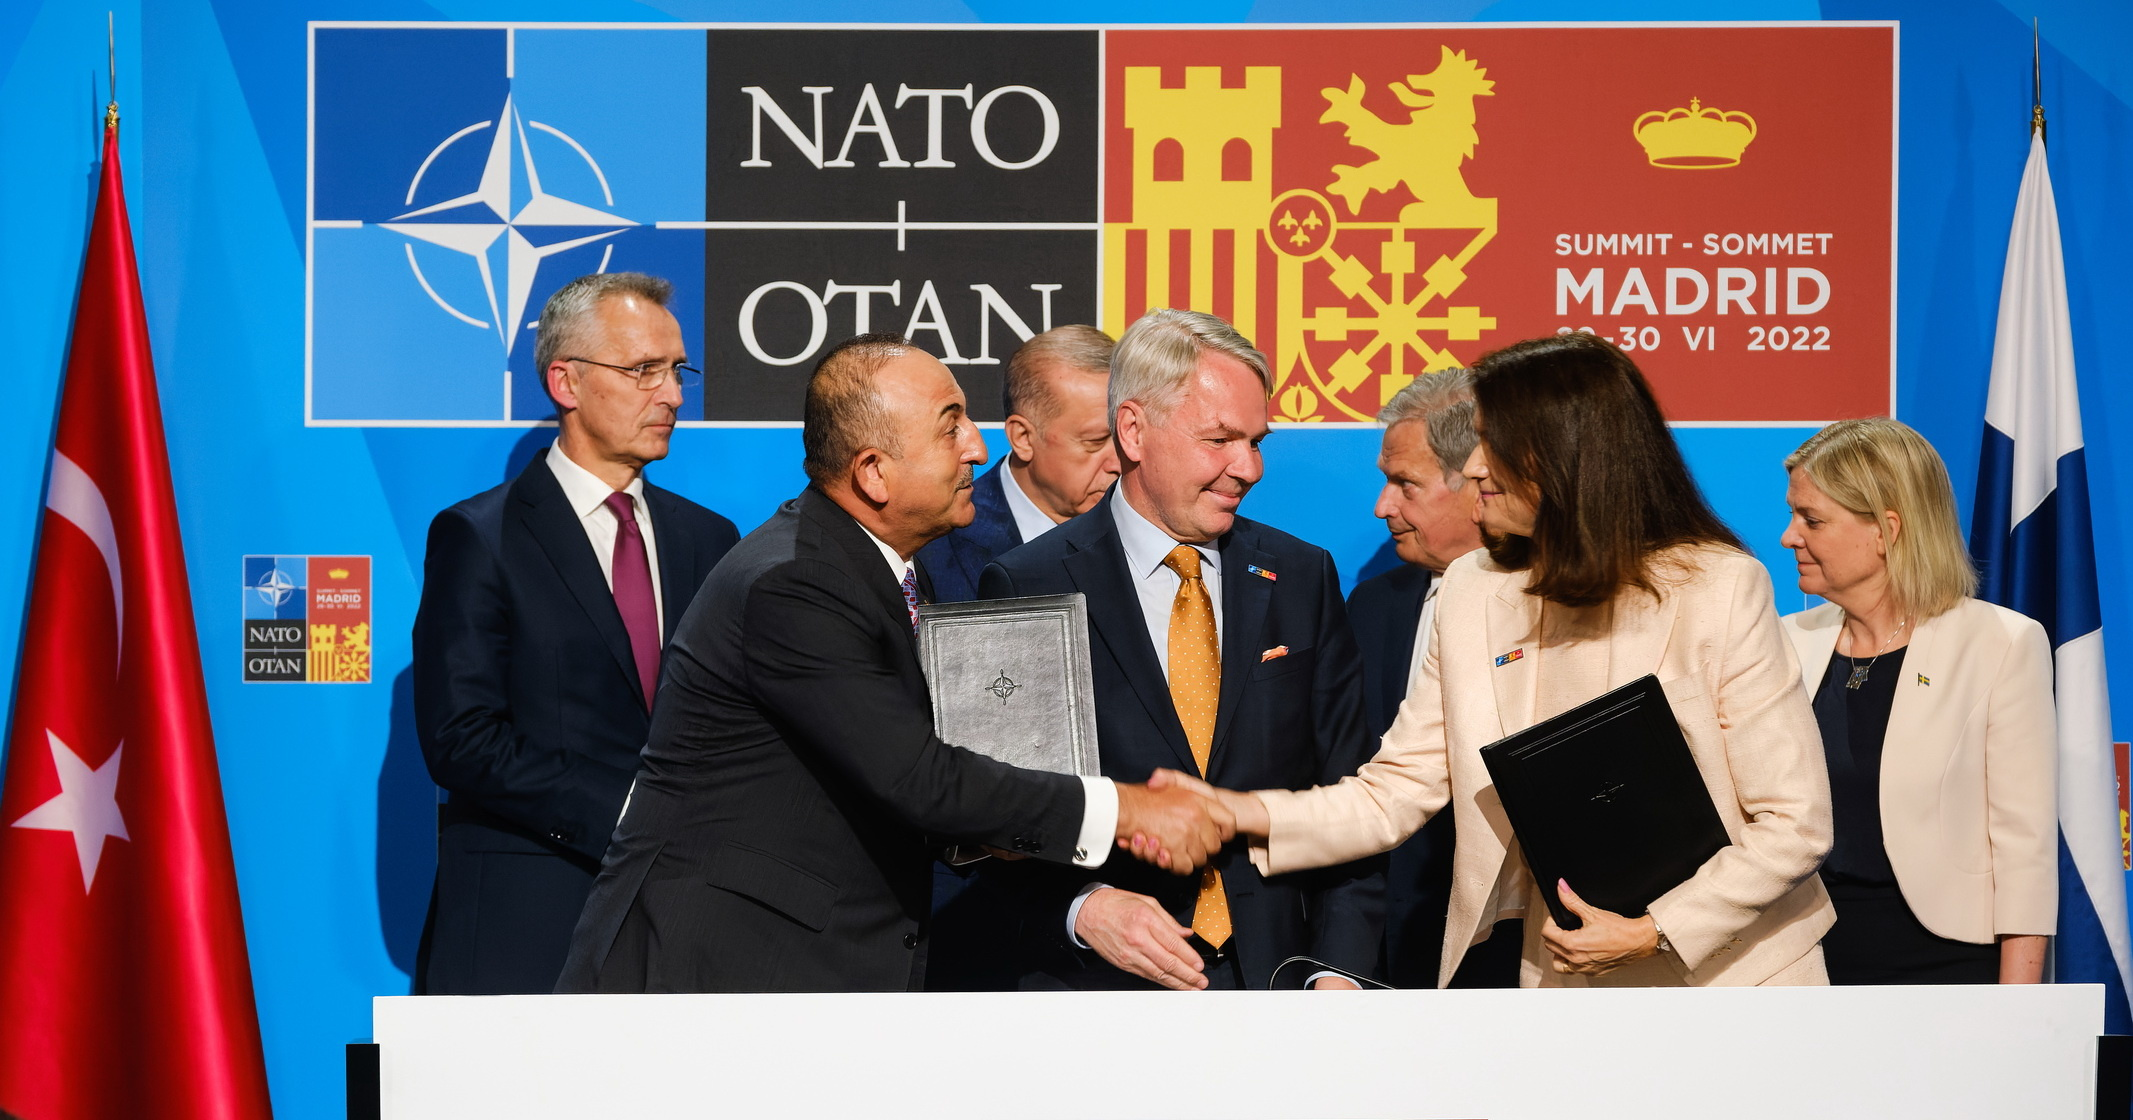 Встреча лидеров Швеции, Финляндии и Турции с генсеком НАТО в Мадриде перед началом саммита Североатлантического союзаФото: nato.int